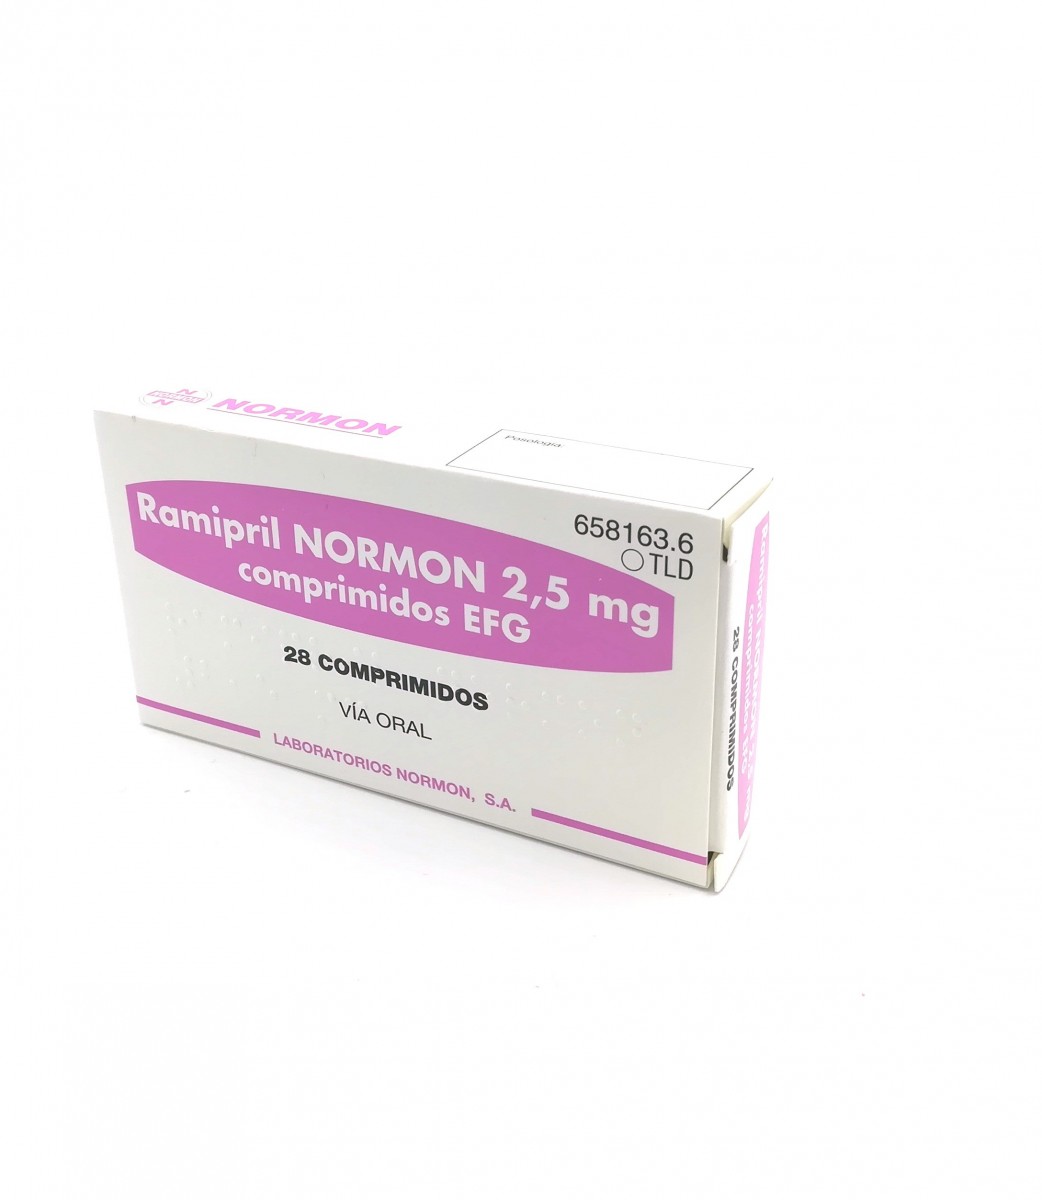 RAMIPRIL NORMON 2,5 mg COMPRIMIDOS EFG, 28 comprimidos fotografía del envase.